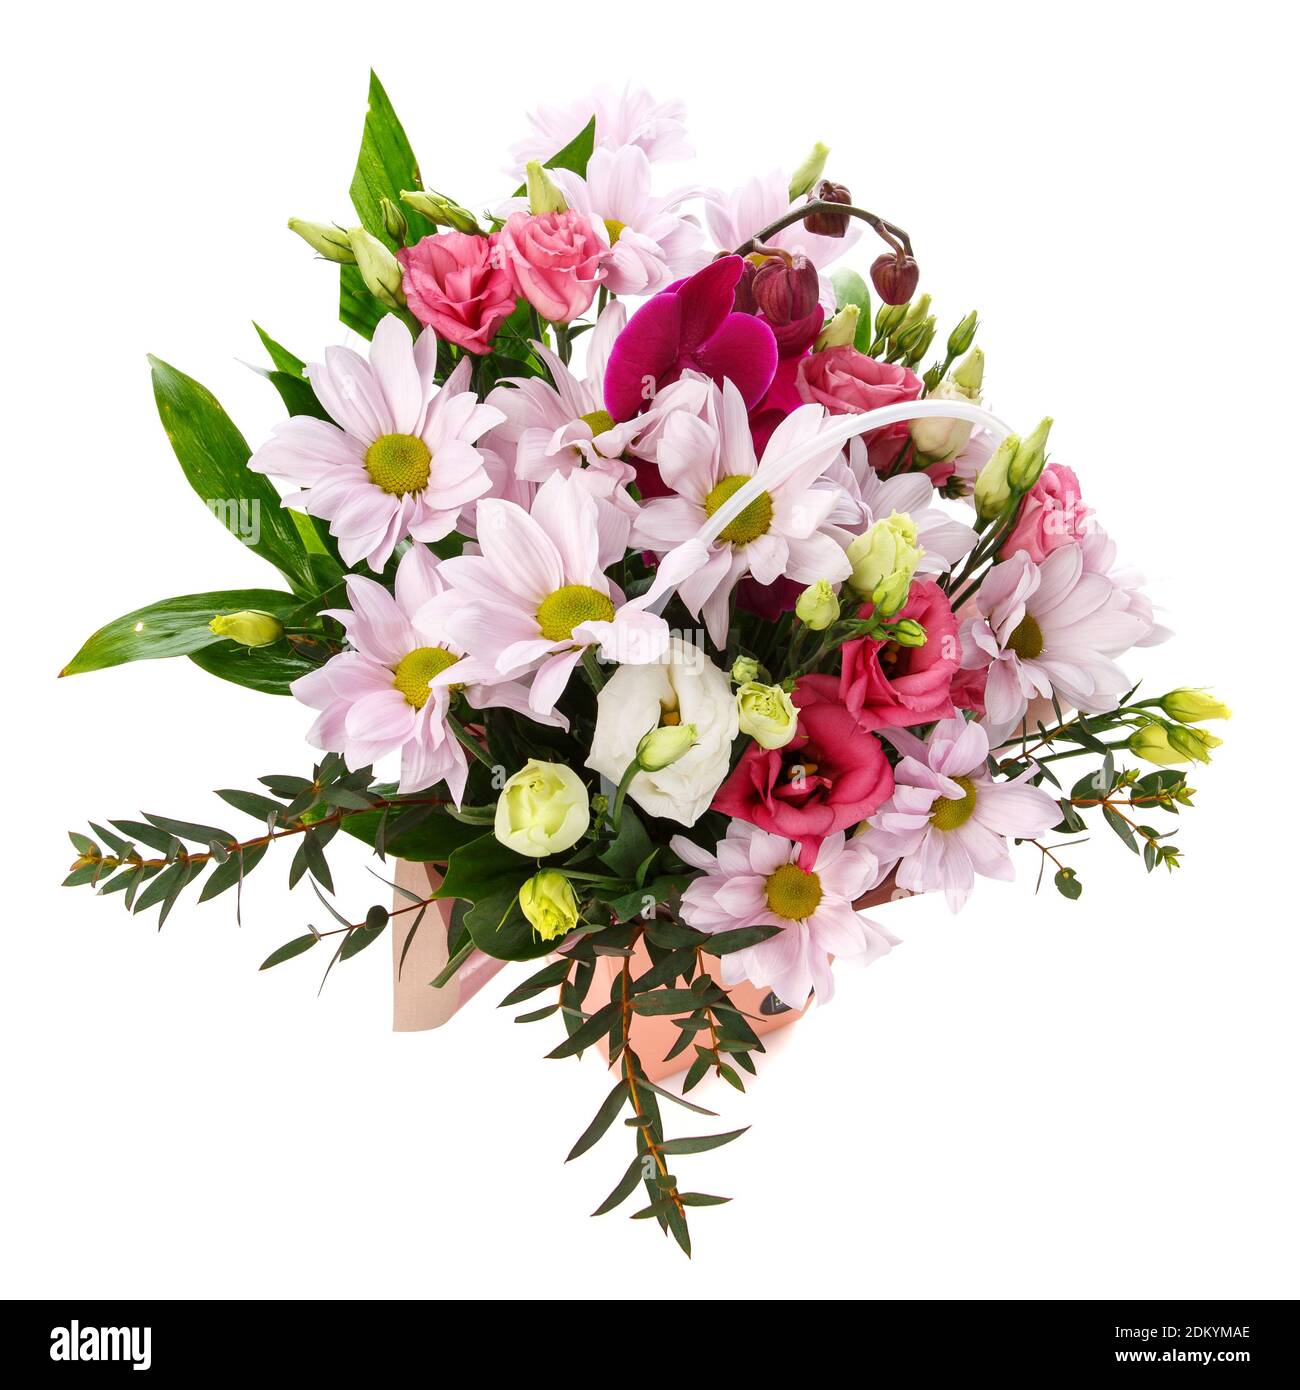 Délicat bouquet de couleurs pastel avec différentes fleurs sur fond blanc. Banque D'Images